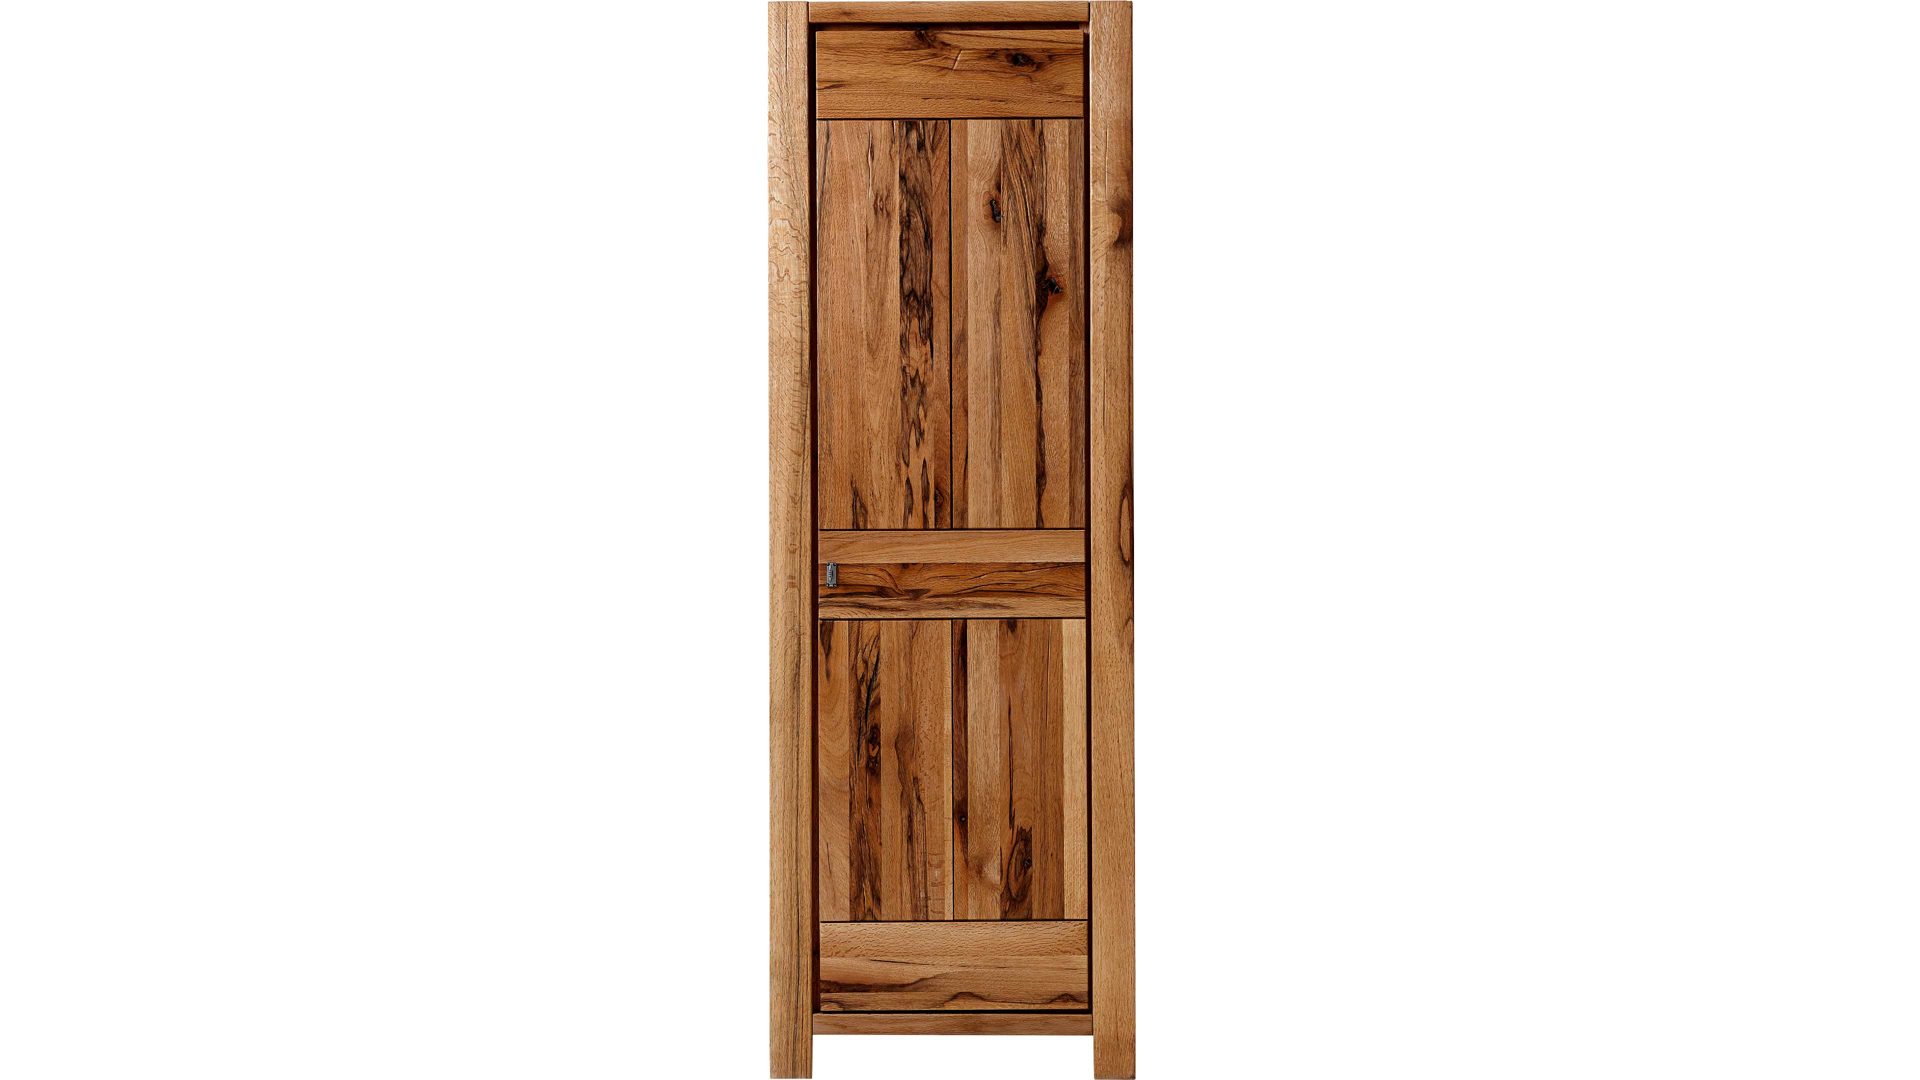 Garderobenschrank Famos sa aus Holz in Holzfarben Garderobenschrank Burgund als stilvolles Massivholzmöbel geölte Wildeiche mit Wuchsrissen – eine Tür, rechts